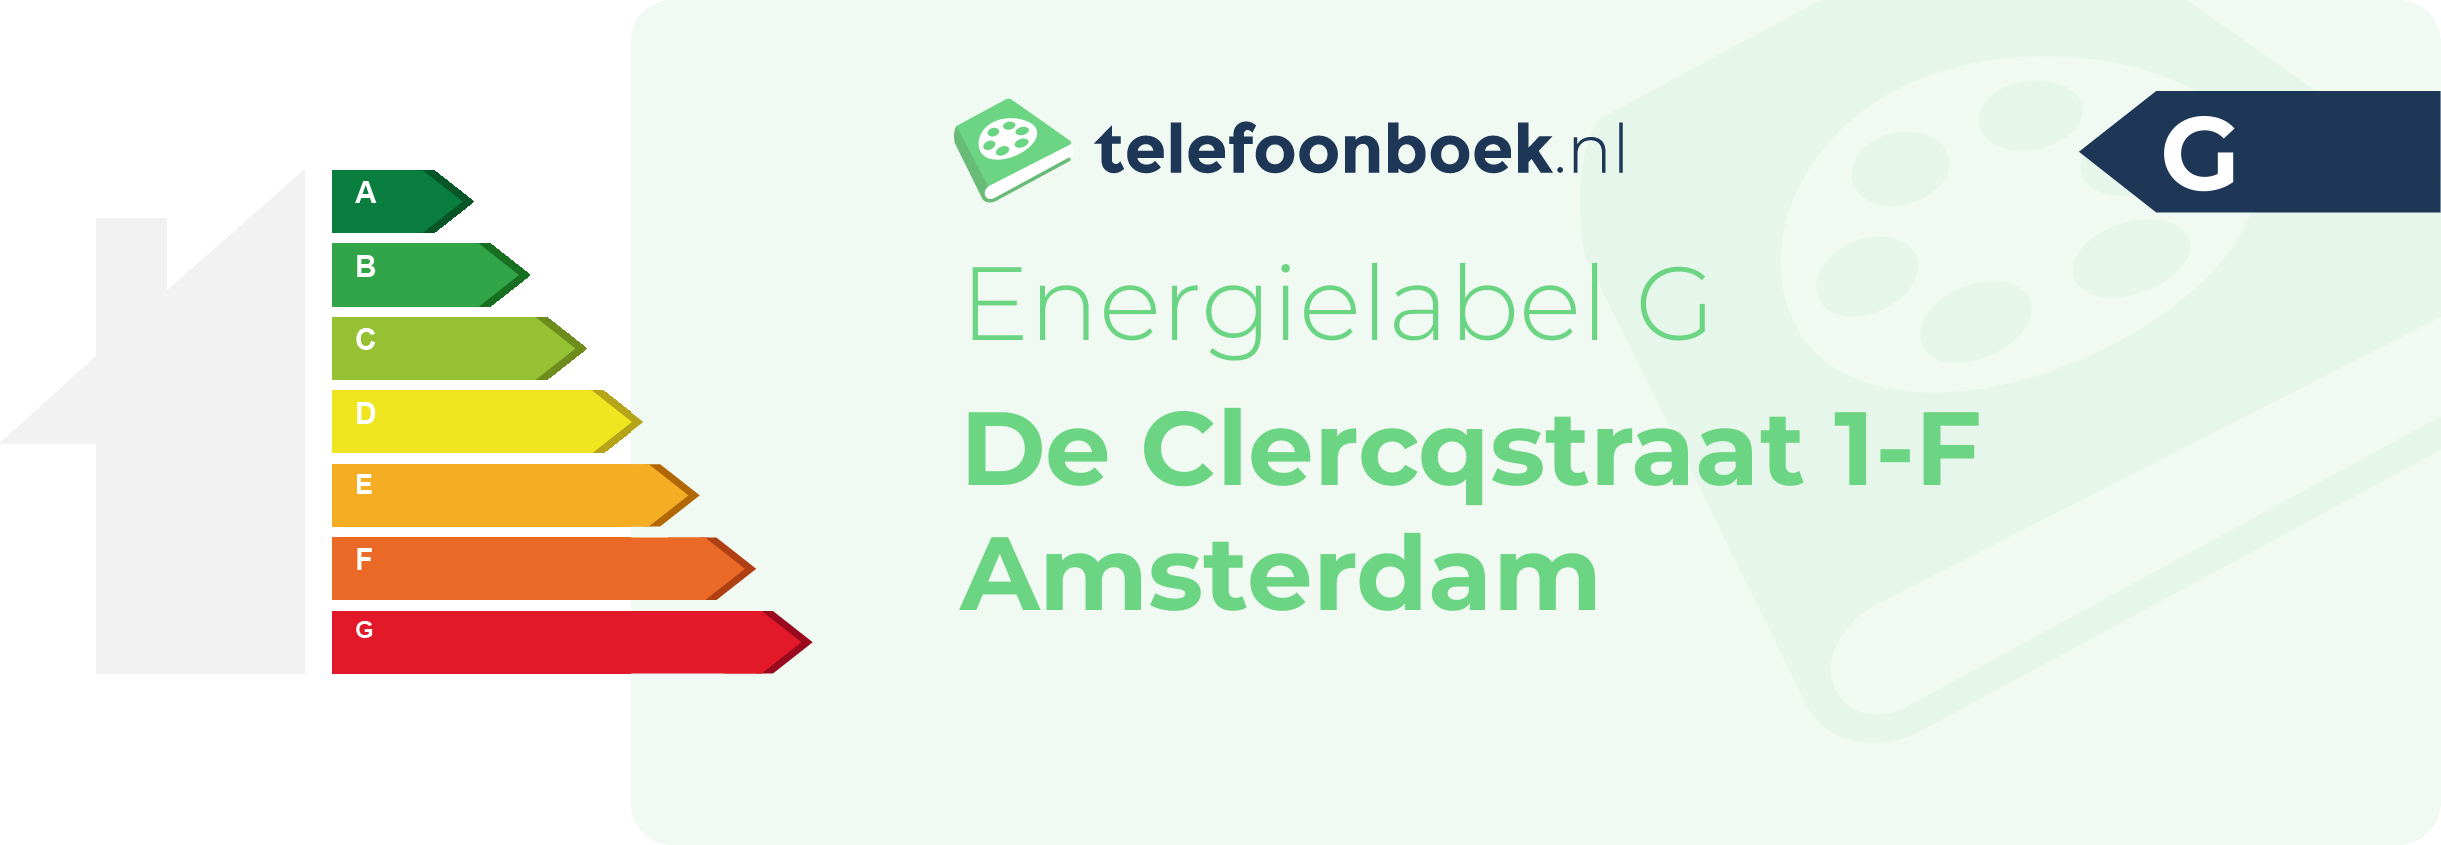 Energielabel De Clercqstraat 1-F Amsterdam